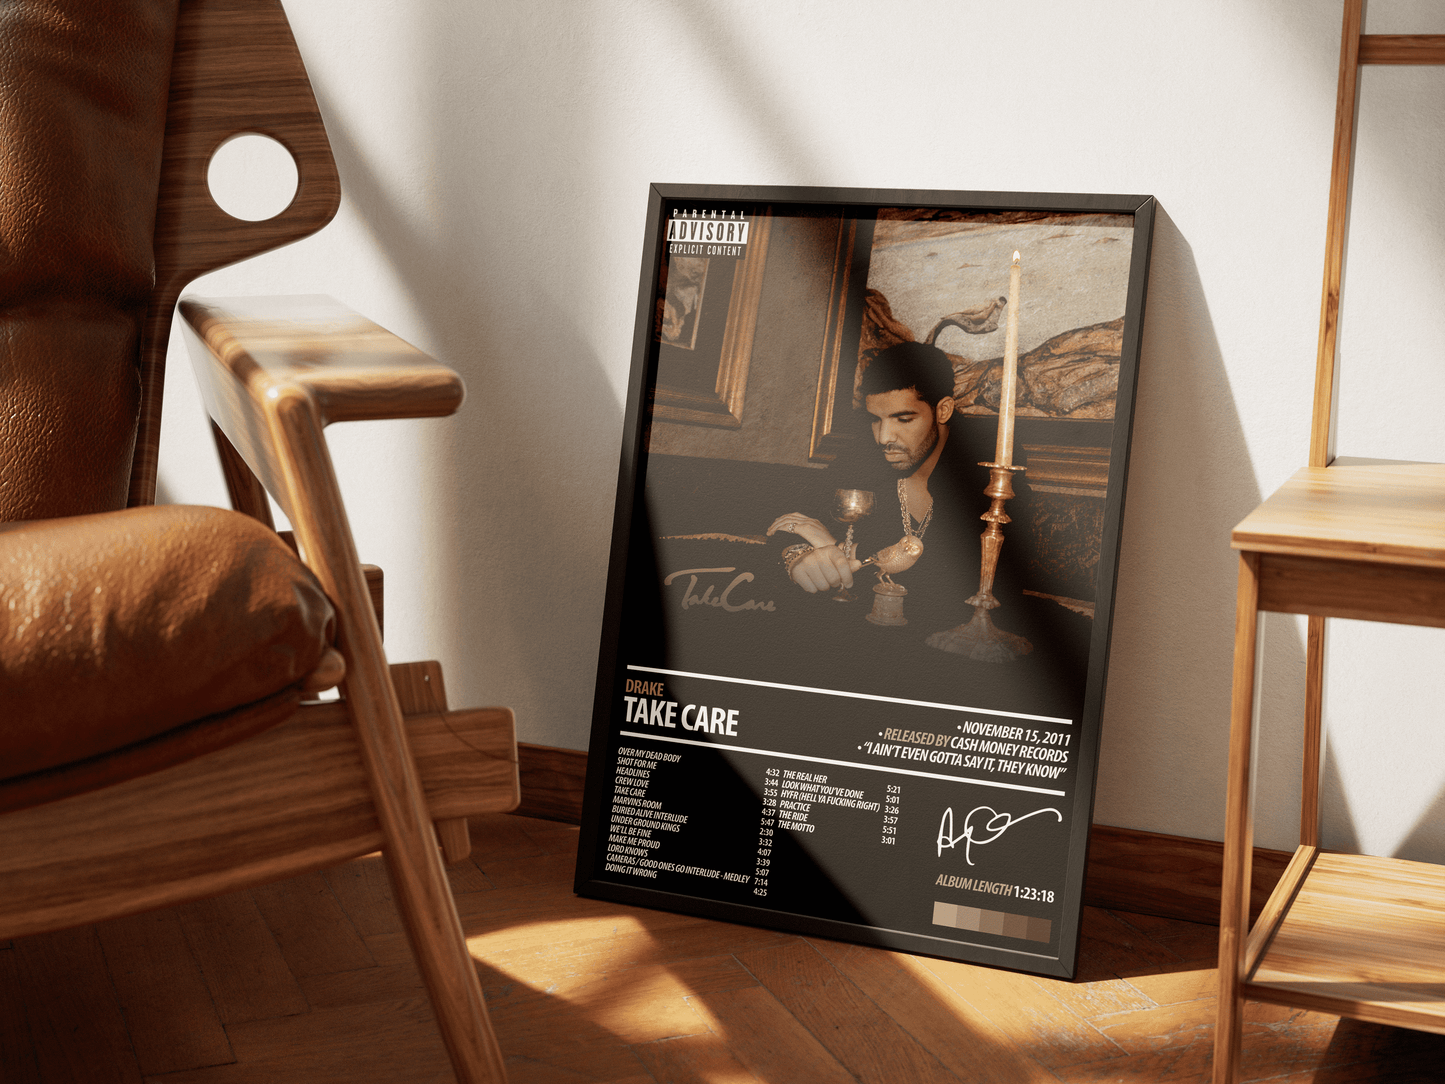 DRAKE Album Poster | Take Care